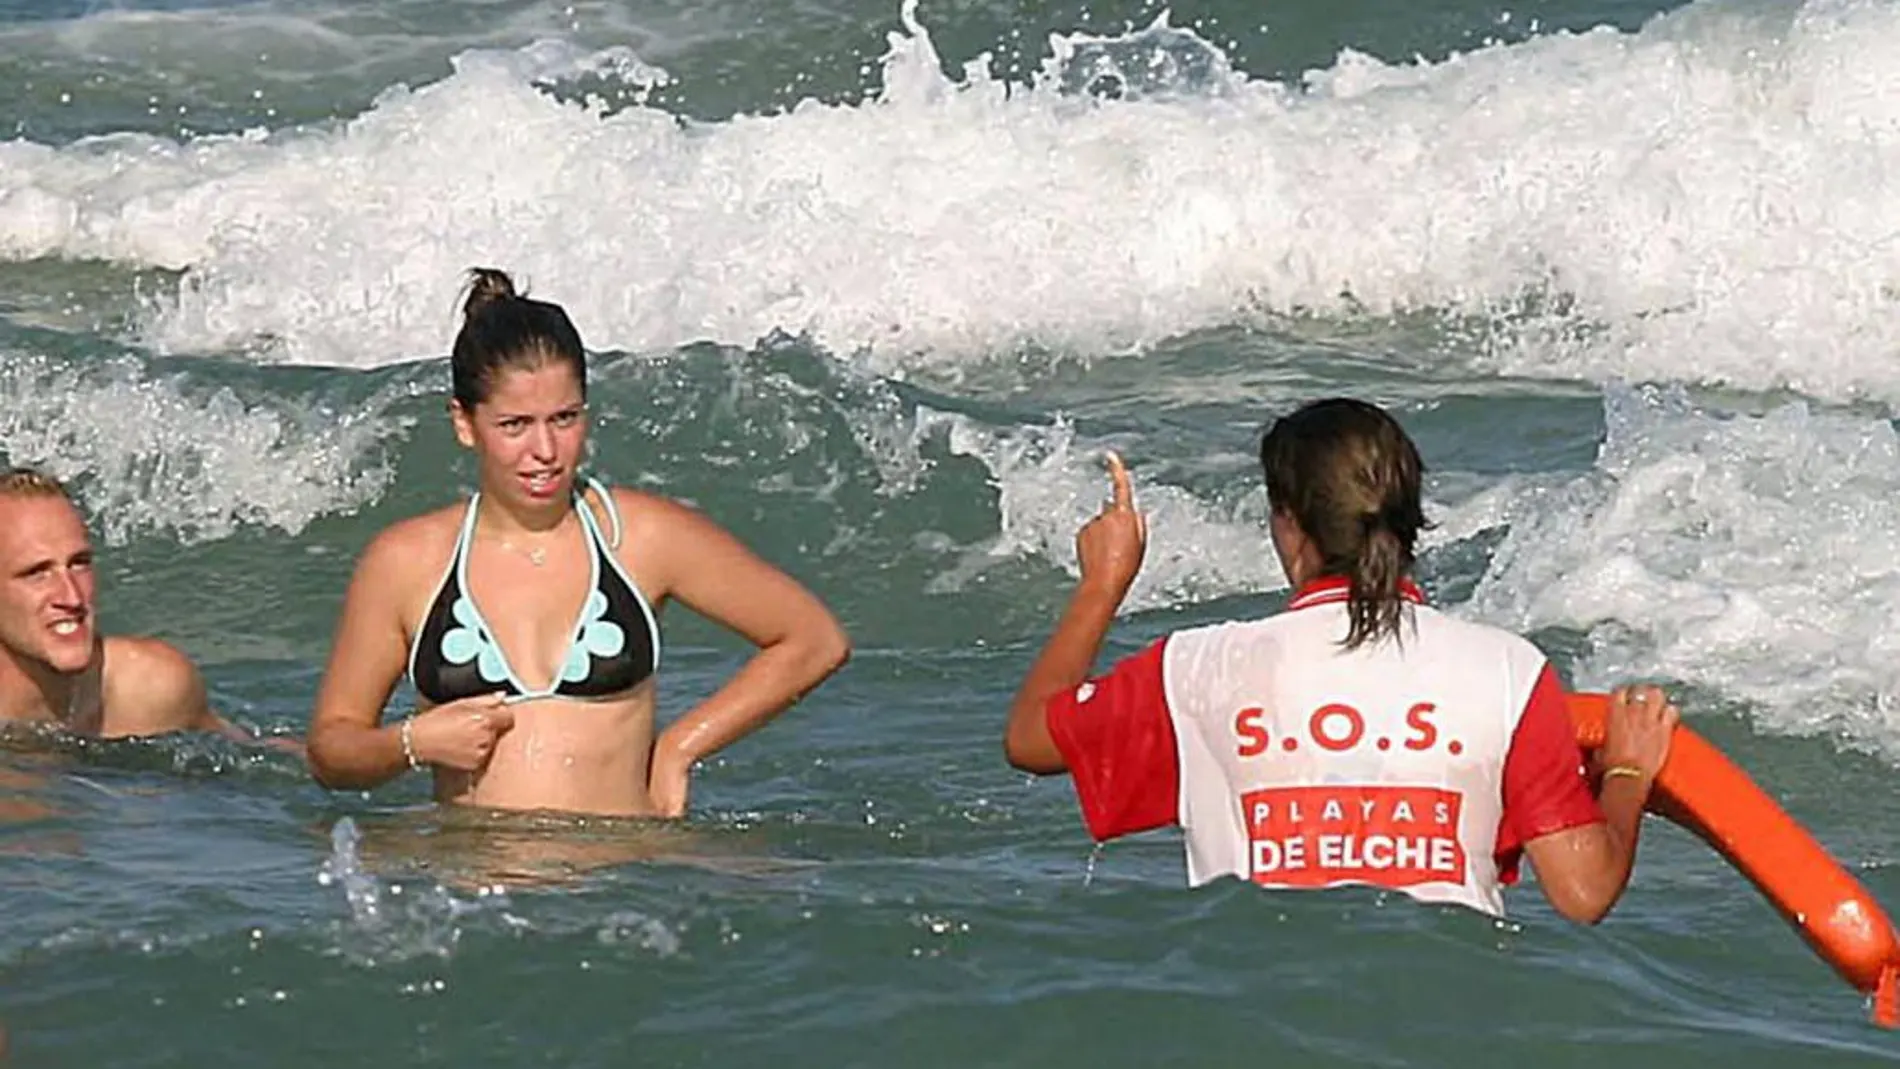 Una socorrista advierte a varias bañistas sobre el peligro de bañarse cuando el mar no está calmado